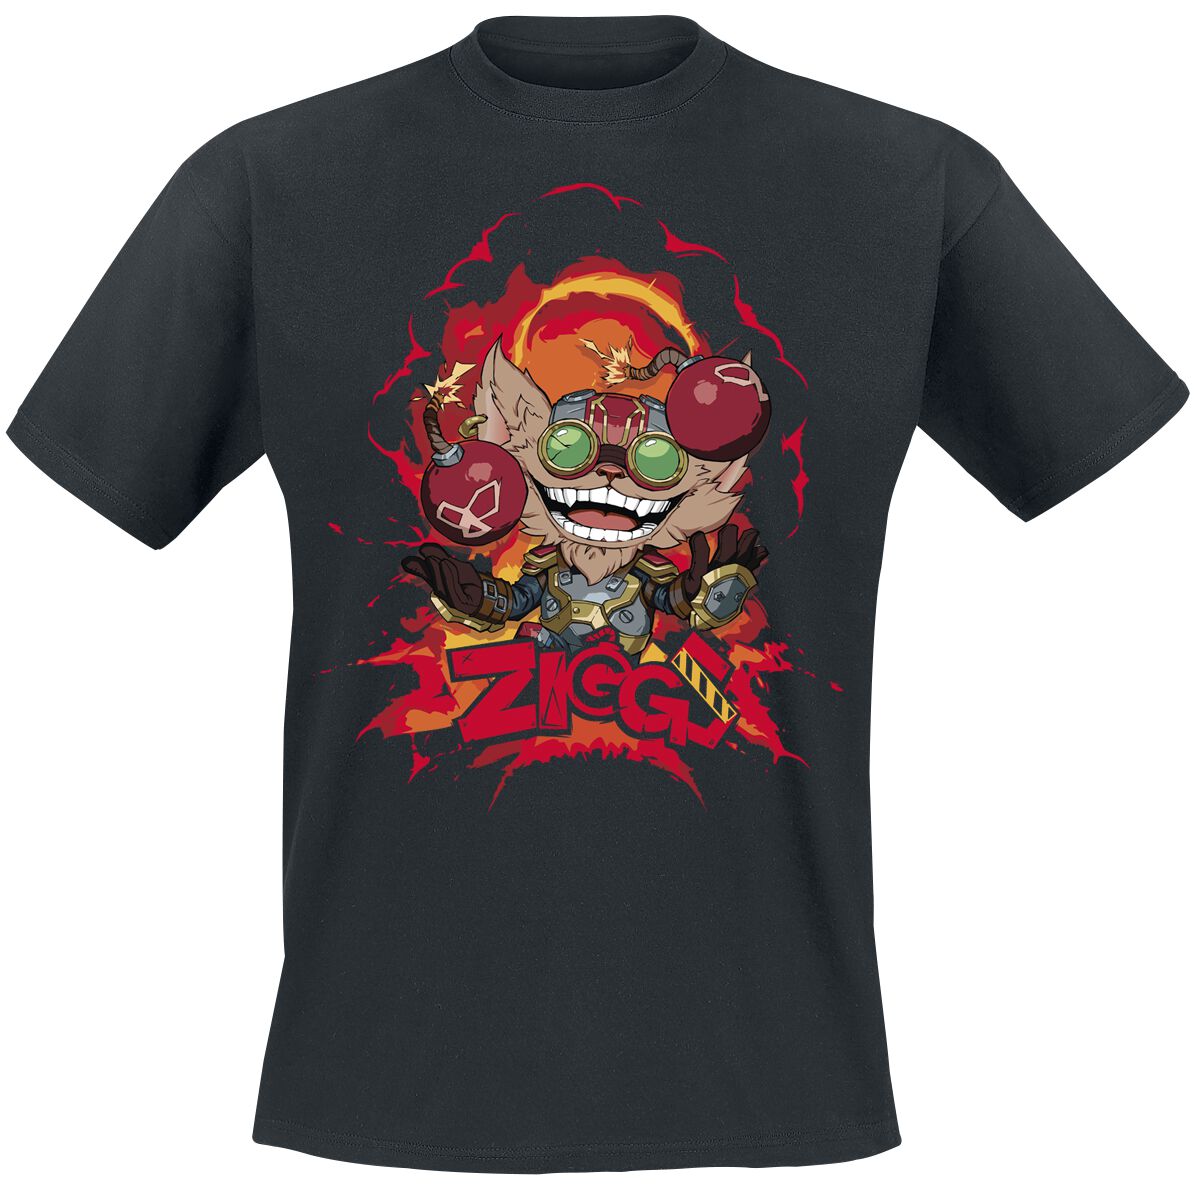 League Of Legends - Gaming T-Shirt - Ziggs - S bis XL - für Männer - Größe L - schwarz  - EMP exklusives Merchandise!